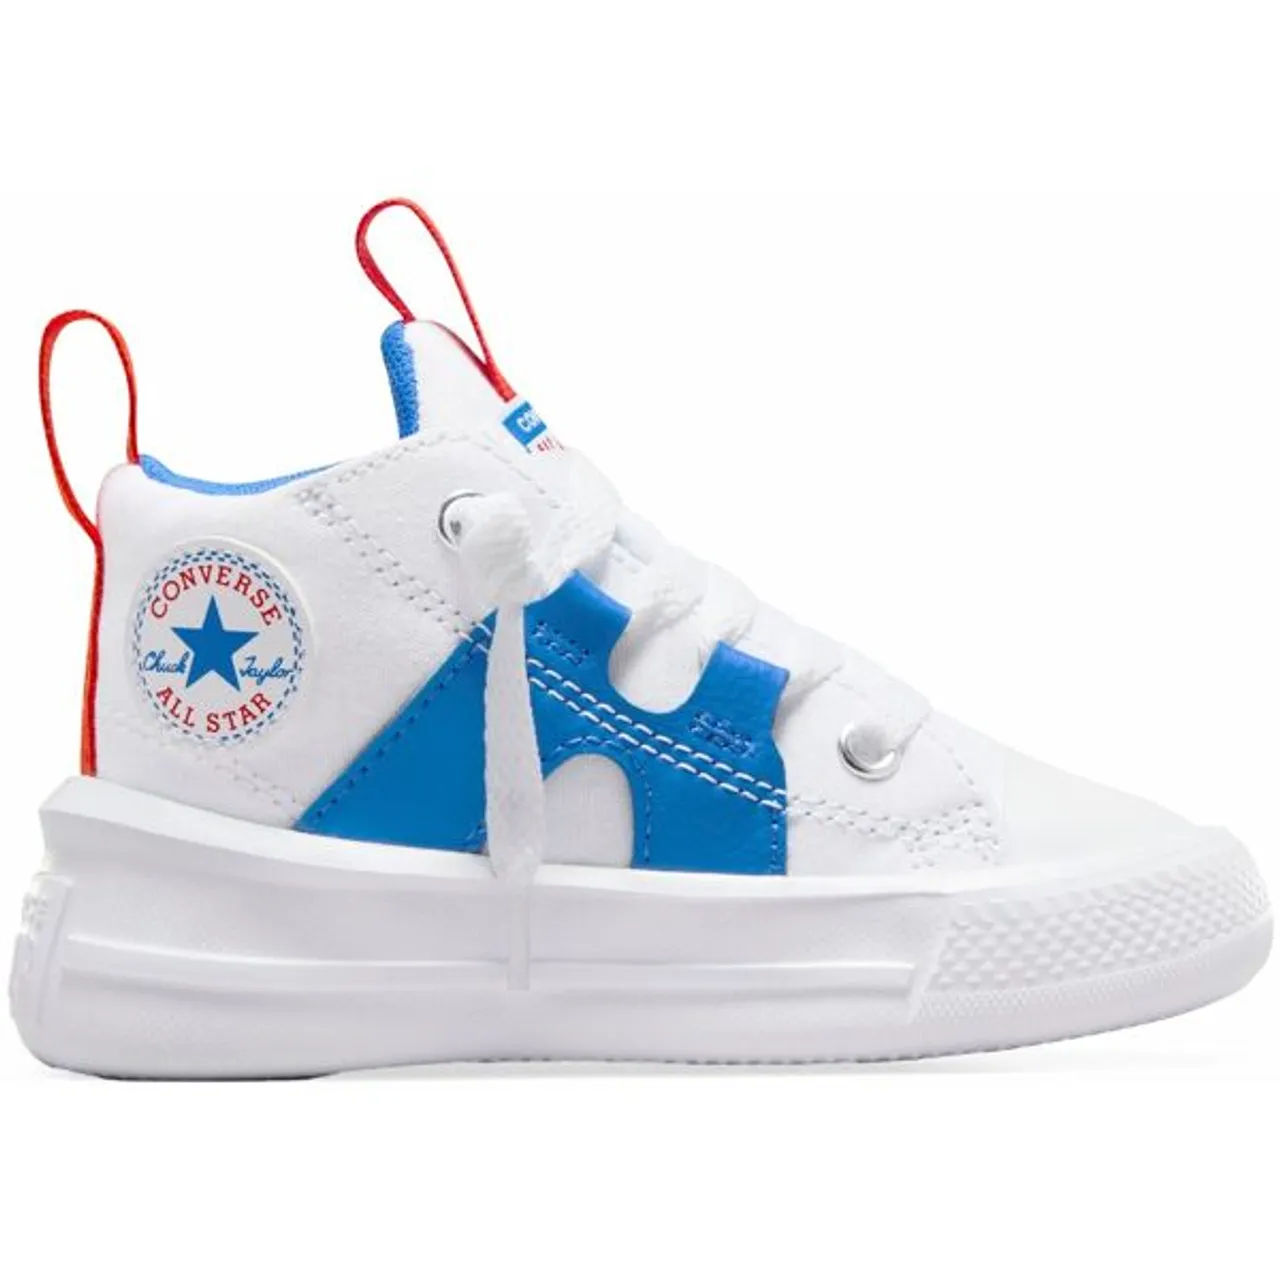 Sneaker CONVERSE "CHUCK TAYLOR ALL STAR ULTRA" Gr. 26, weiß (white) Schuhe Sneaker